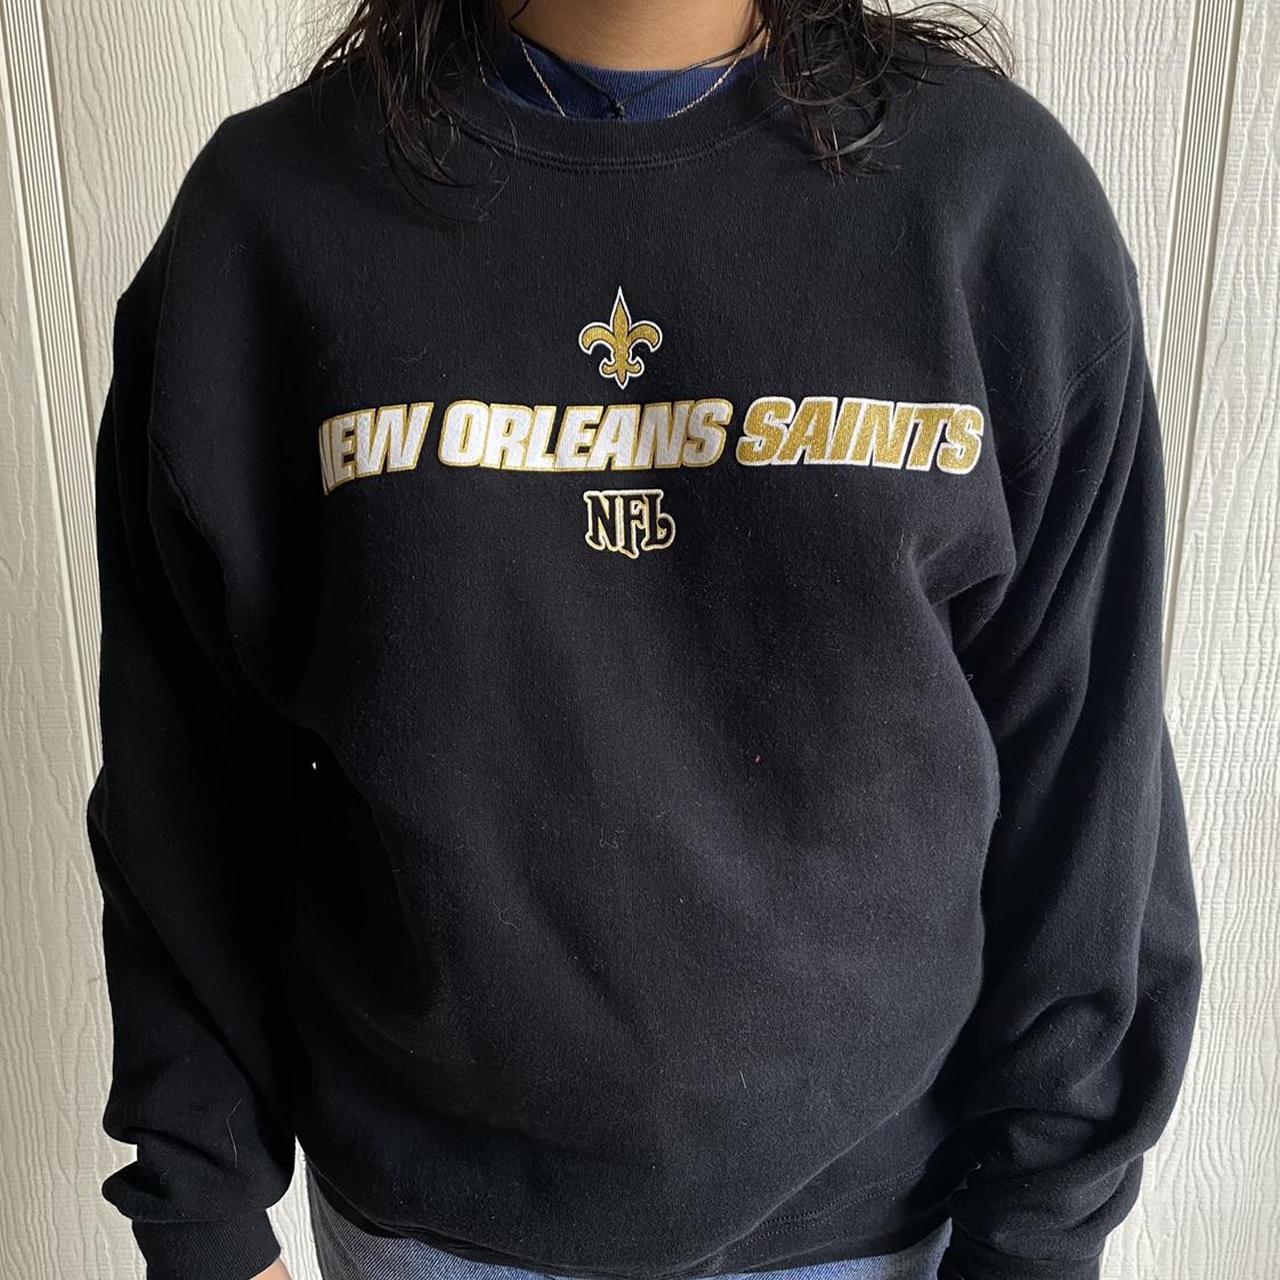 Product Image 1 - New Orleans saints sweatshirt
Size large
Measurements:
Pit